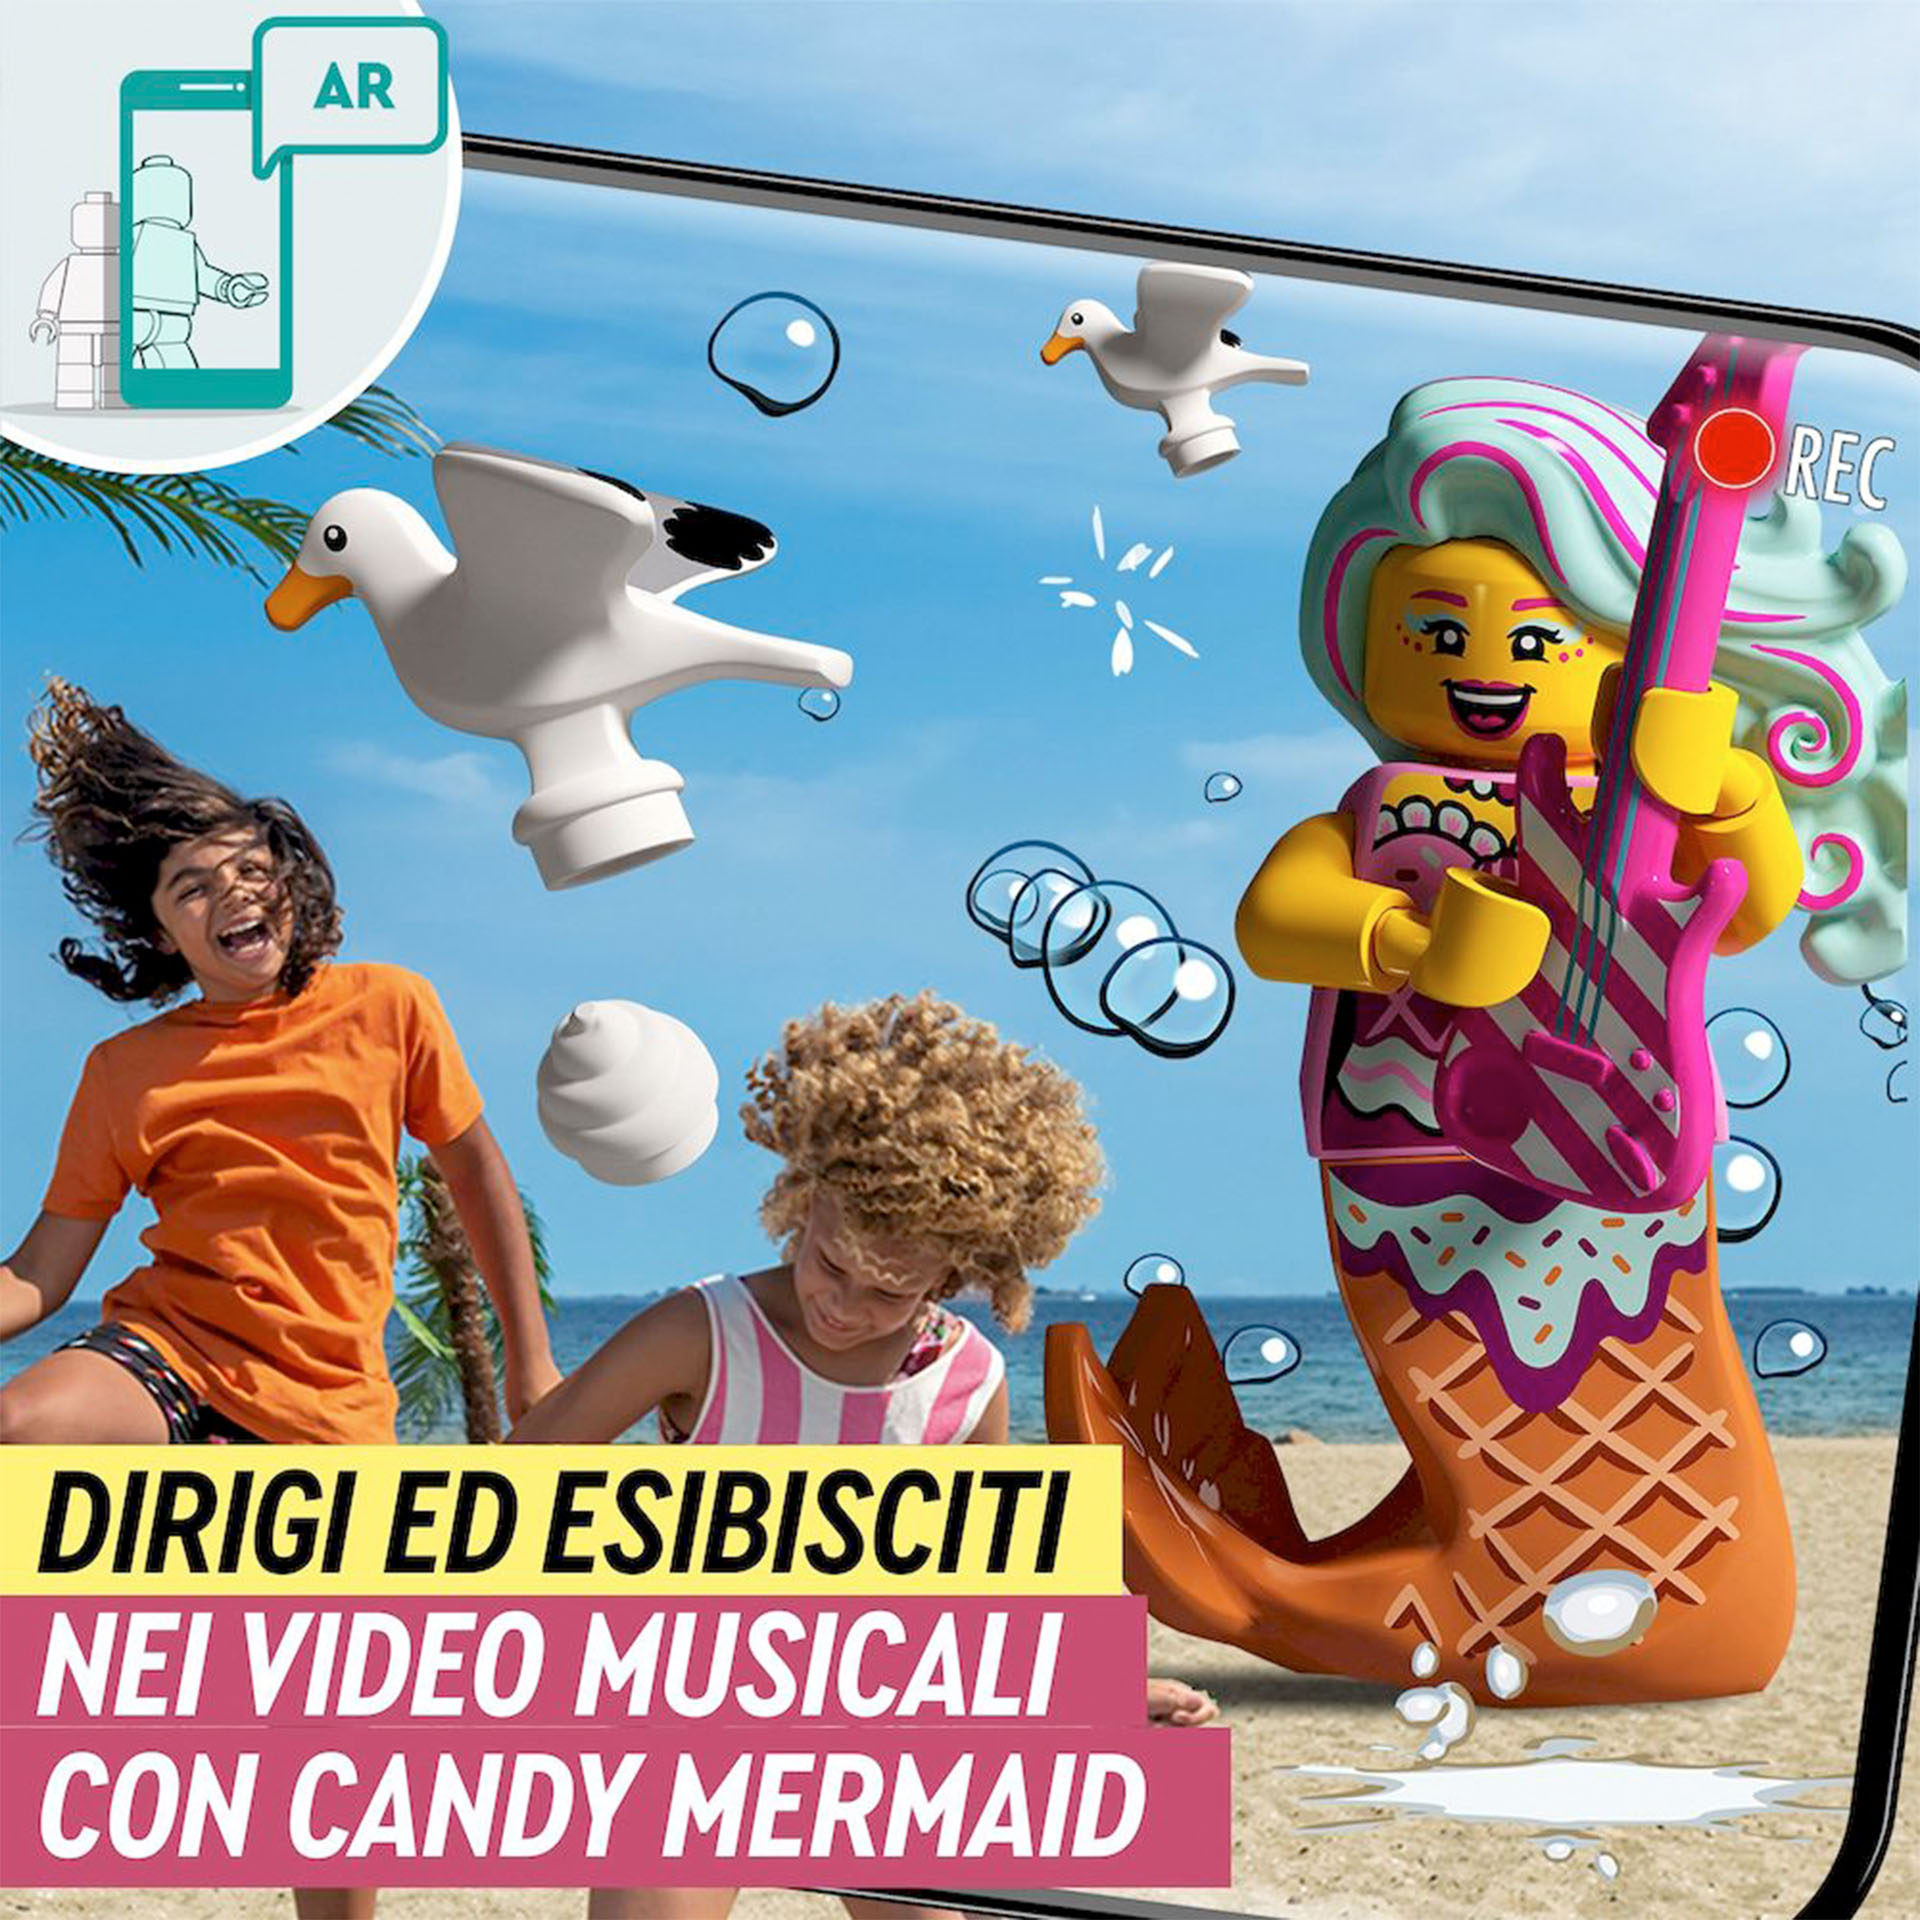 LEGO VIDIYO Candy Mermaid BeatBox  43102, , large